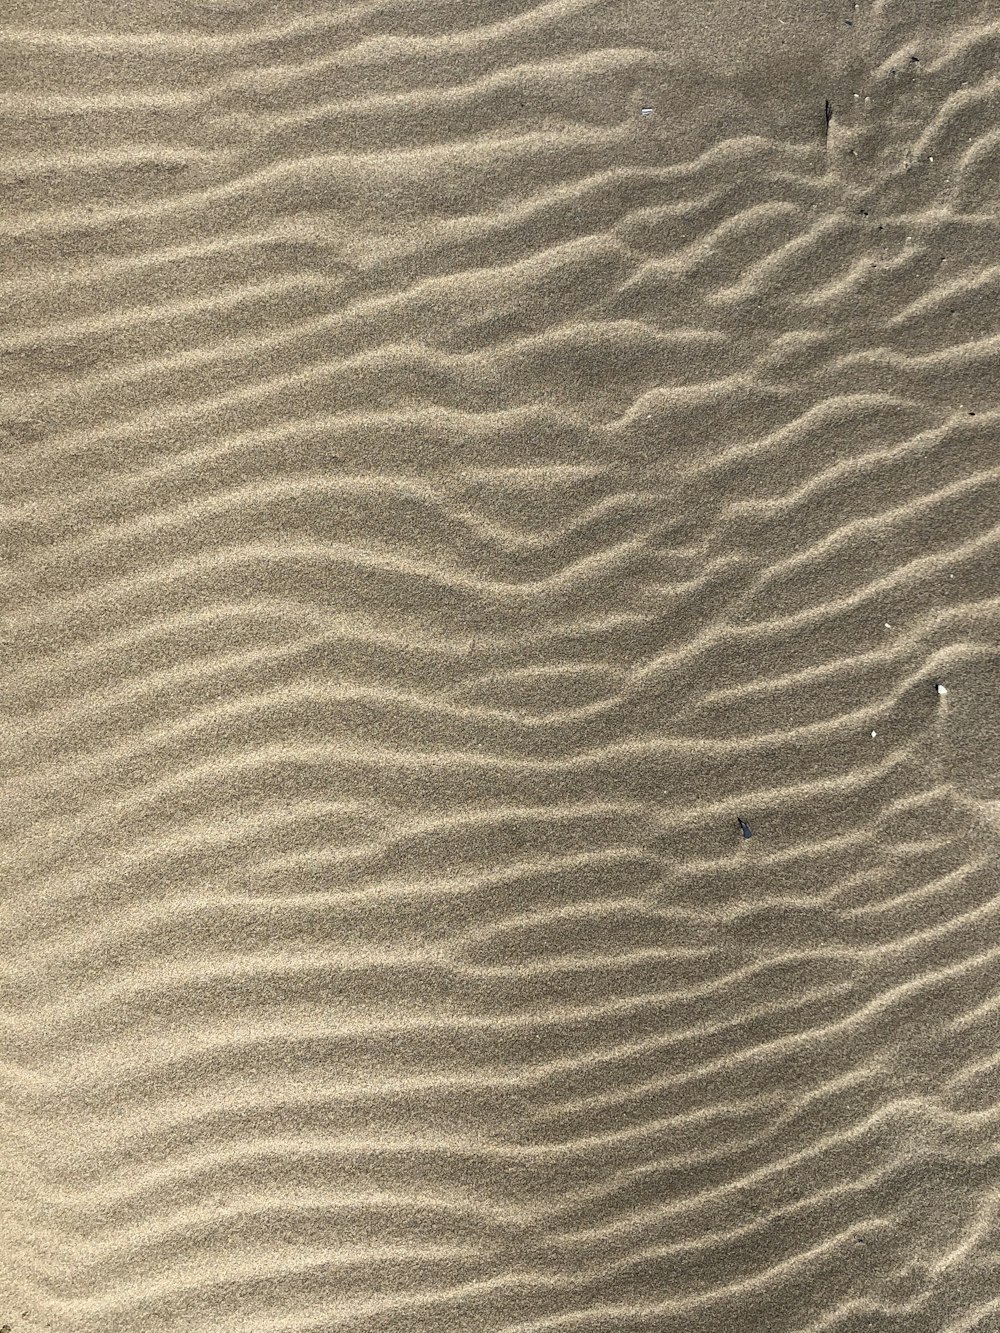 brauner Sand mit Schatten der Person